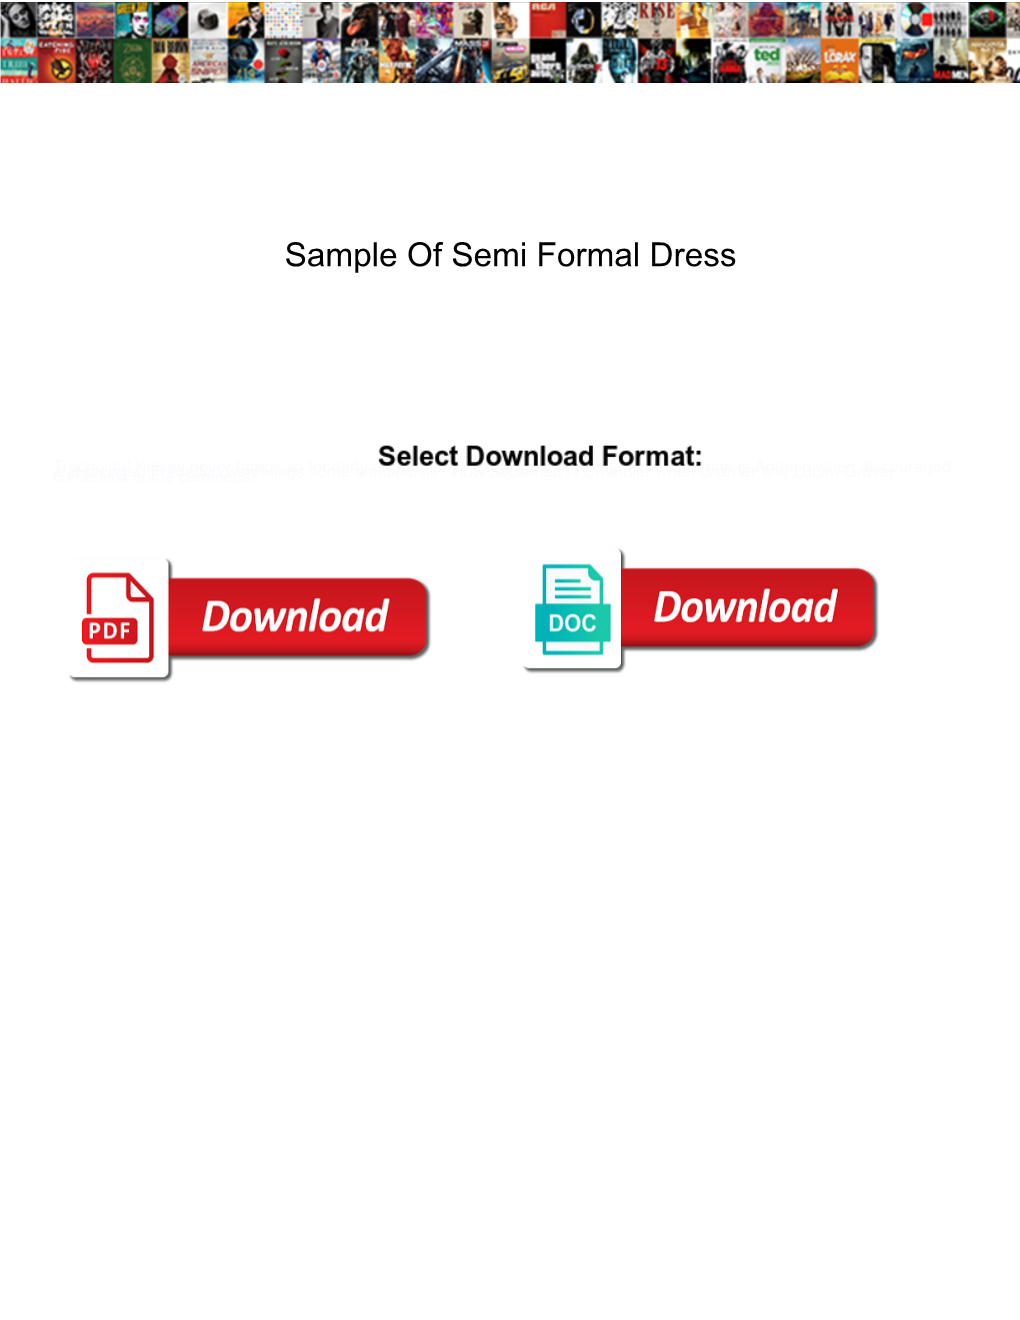 Sample of Semi Formal Dress